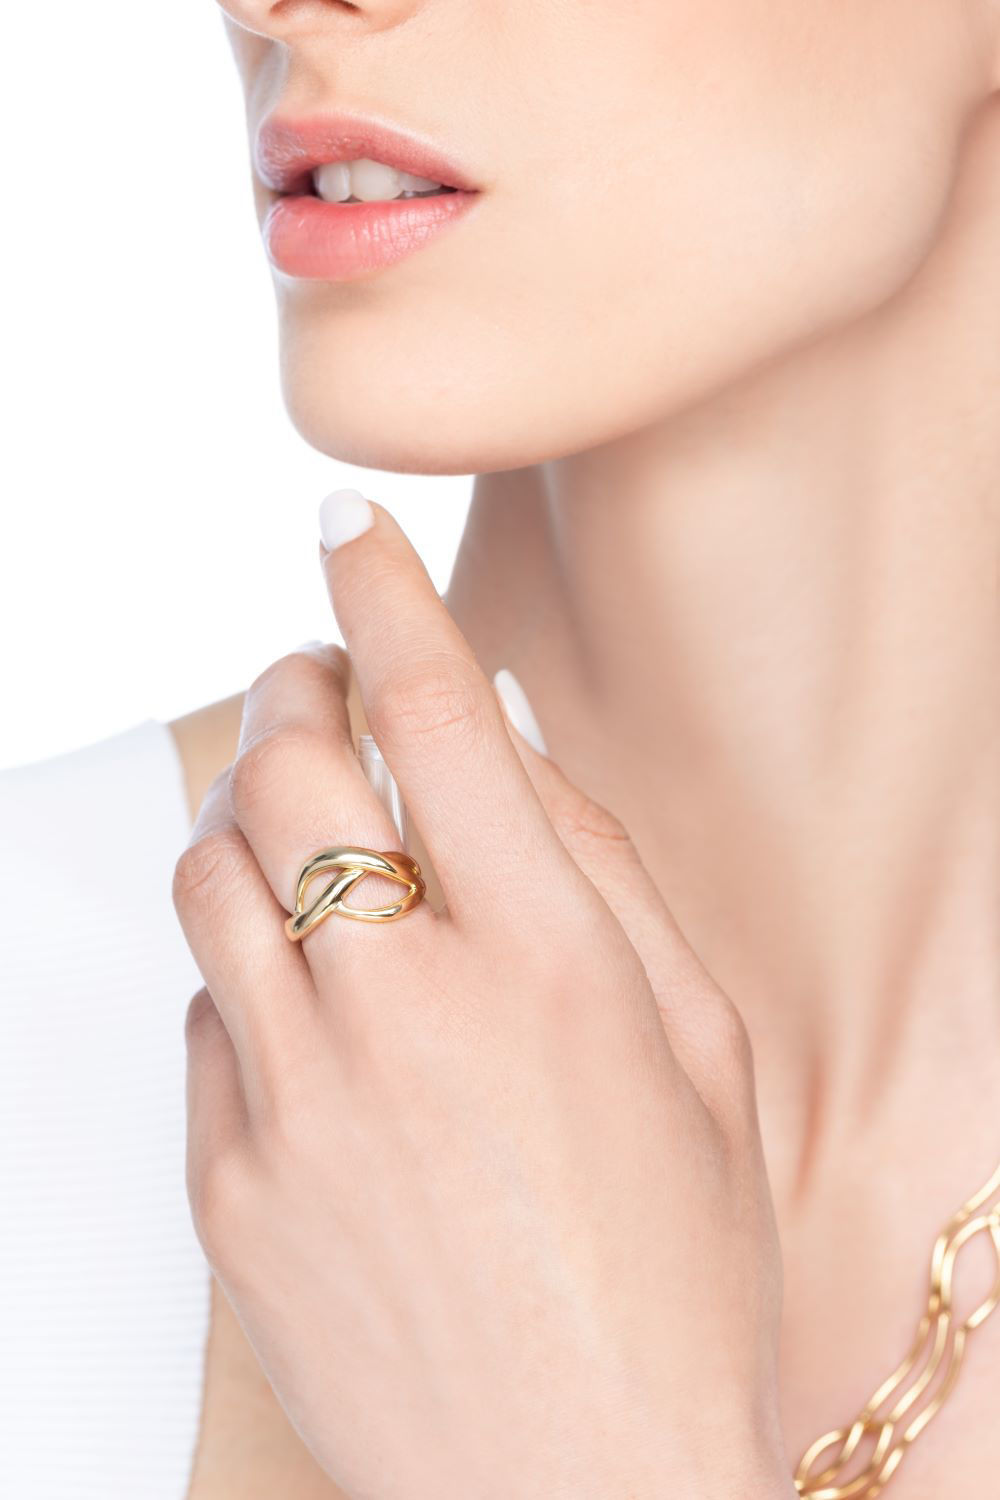 Δαχτυλίδι Aurum από χρυσό 18K